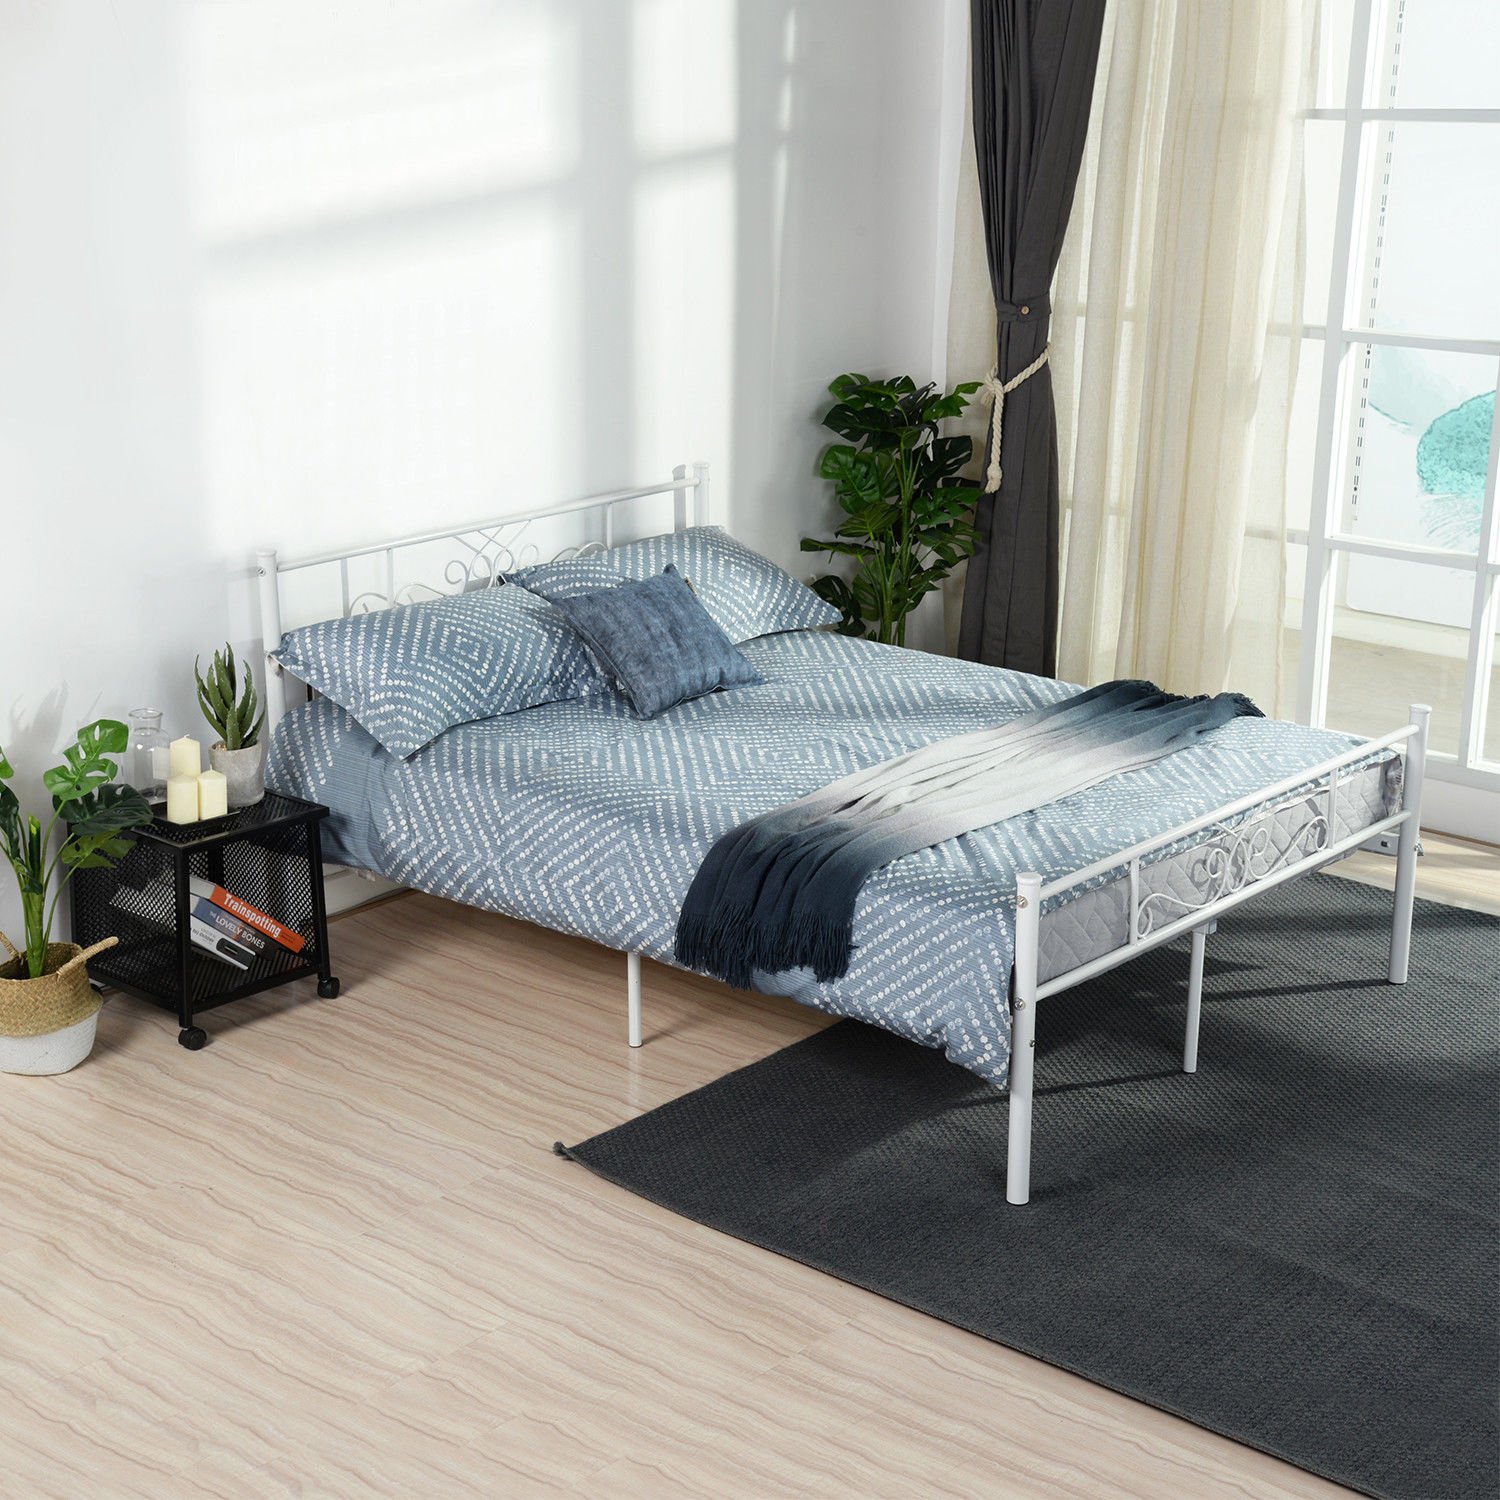 Queen Size Metal Bed Frame Bedroom Mattress Platform ...